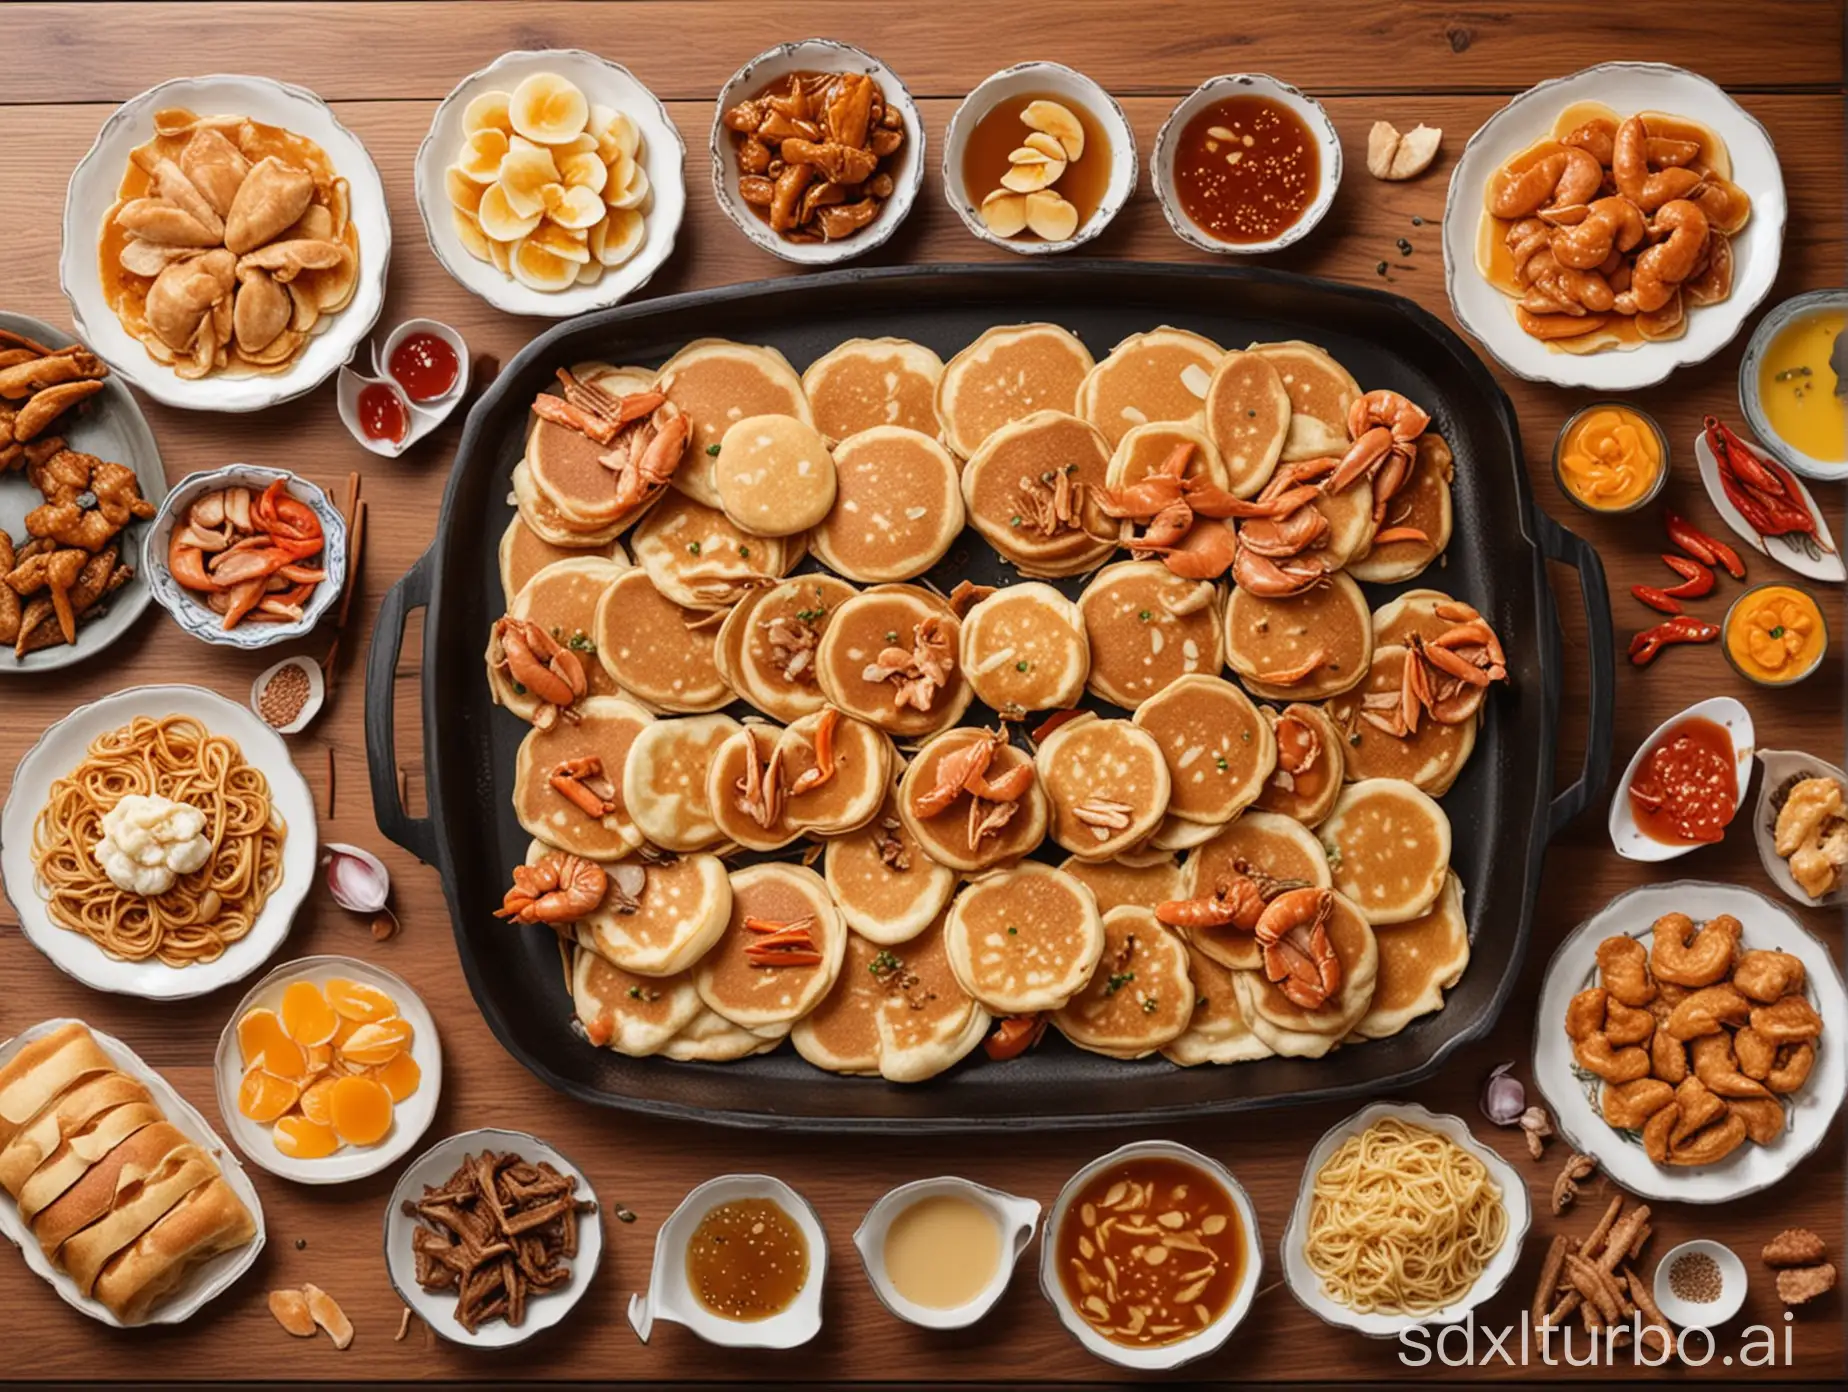 绘制一张中国特色的，有饼、螃蟹、烤鸭等各种美食的图片作为视频封面